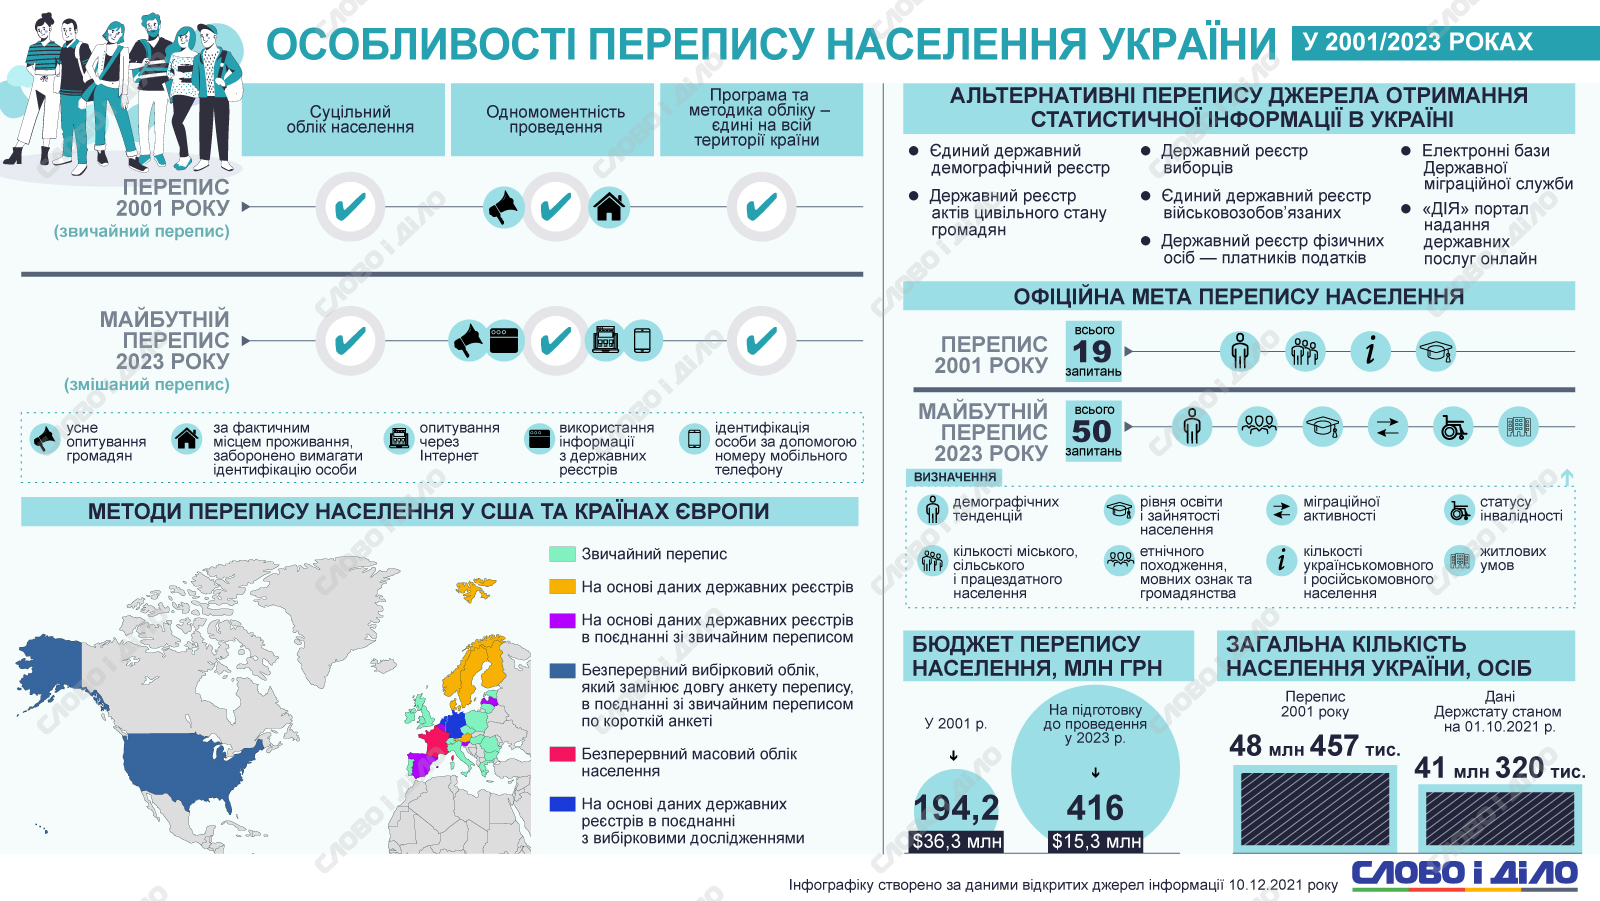 Перспективи української російської мови в 2023 році